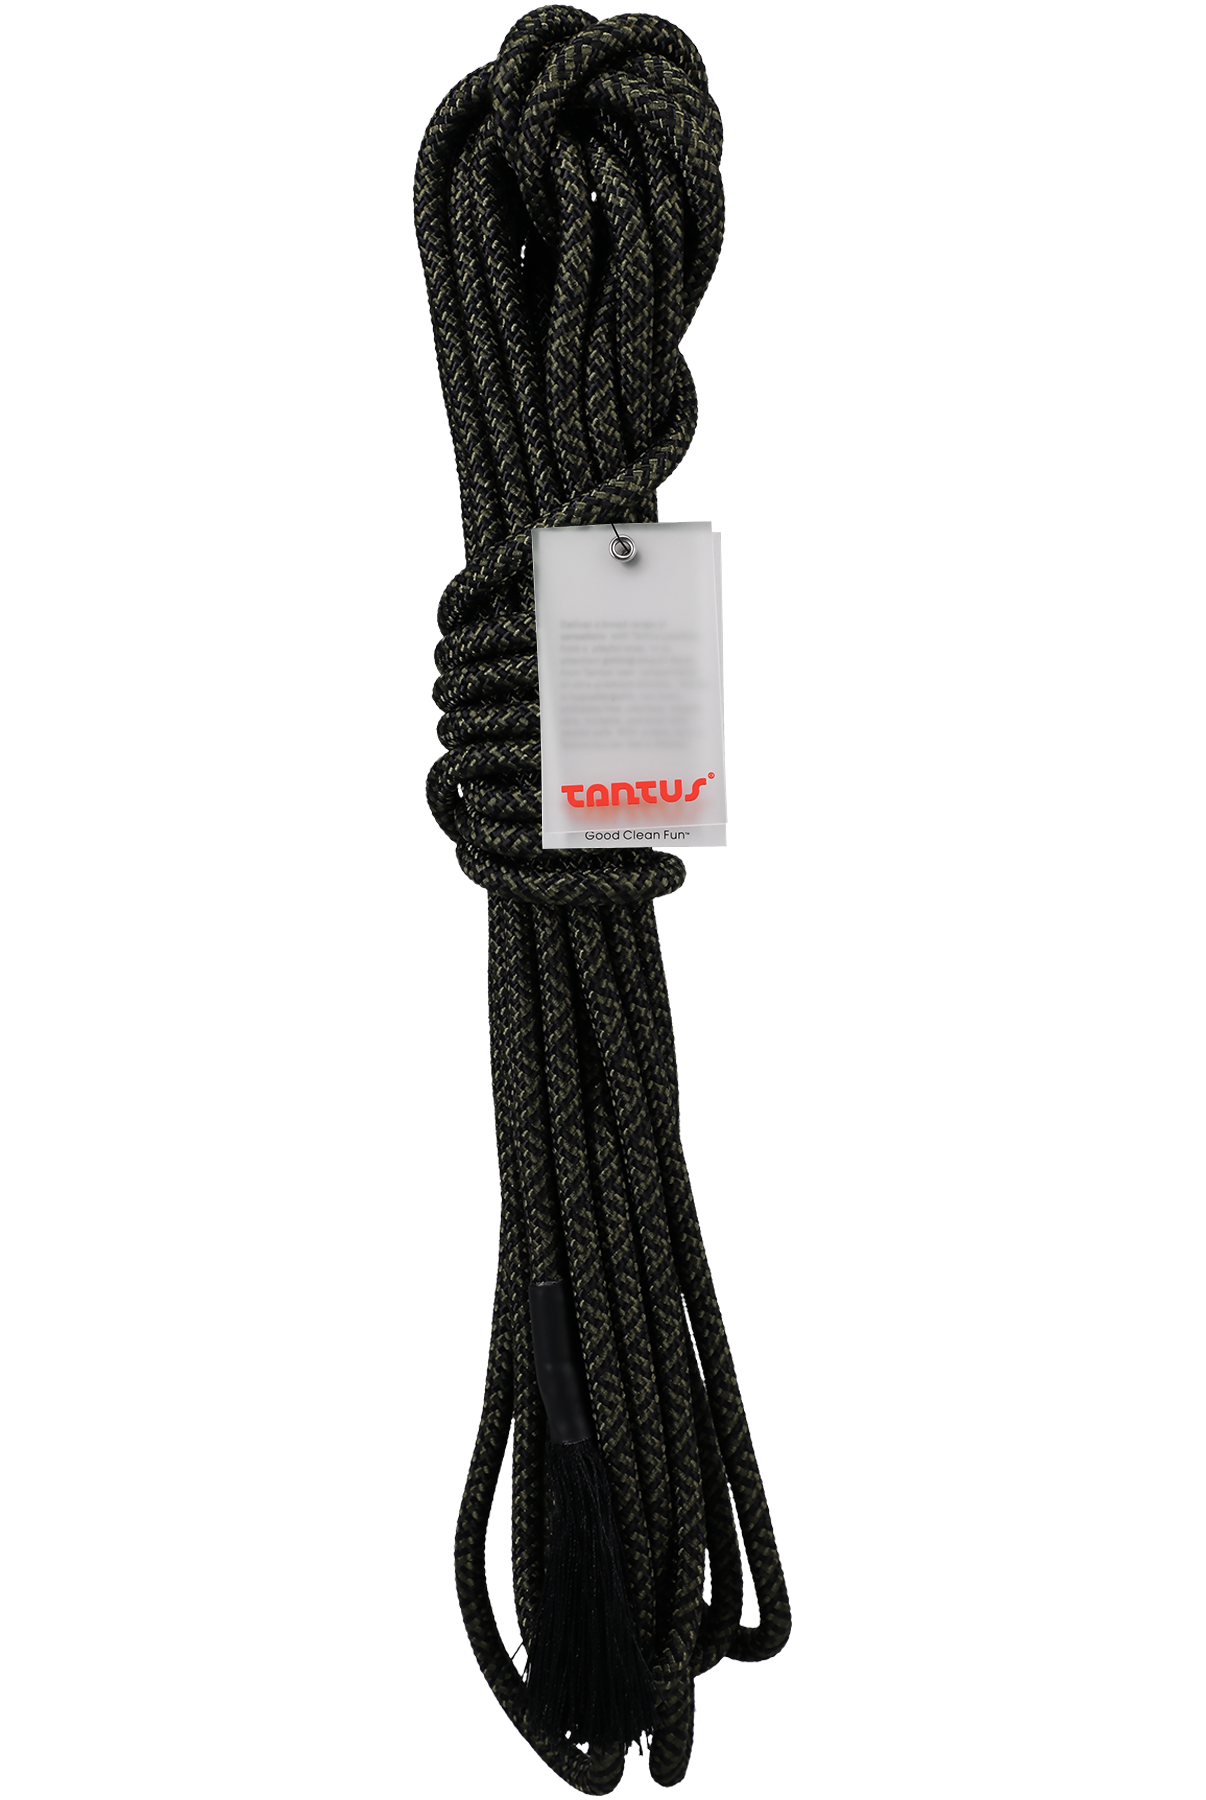 Rope - 30 Feet - Olive, Onyx - ACME Pleasure